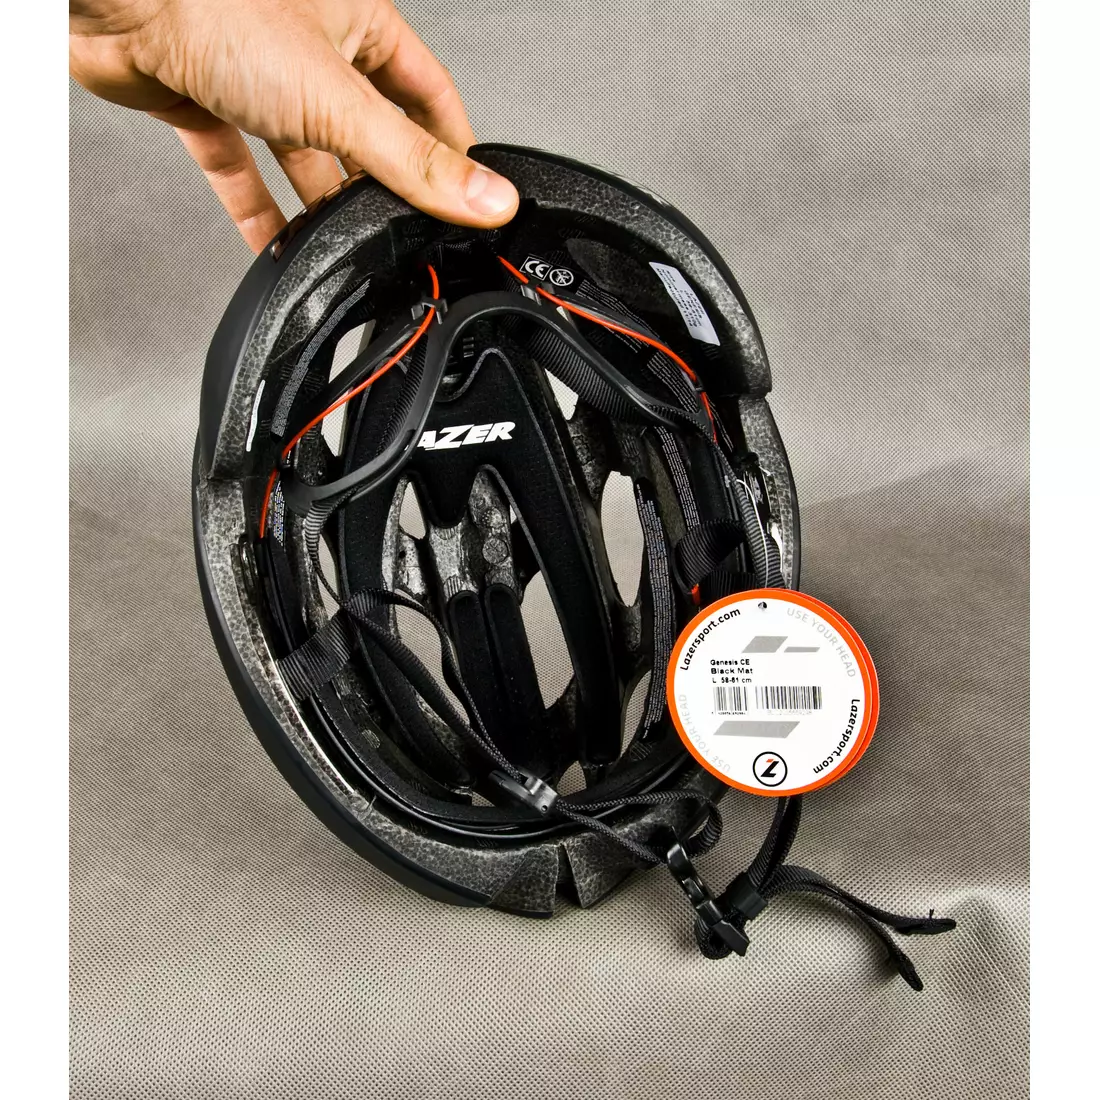 LAZER GENESIS bicycle helmet, road, matt black